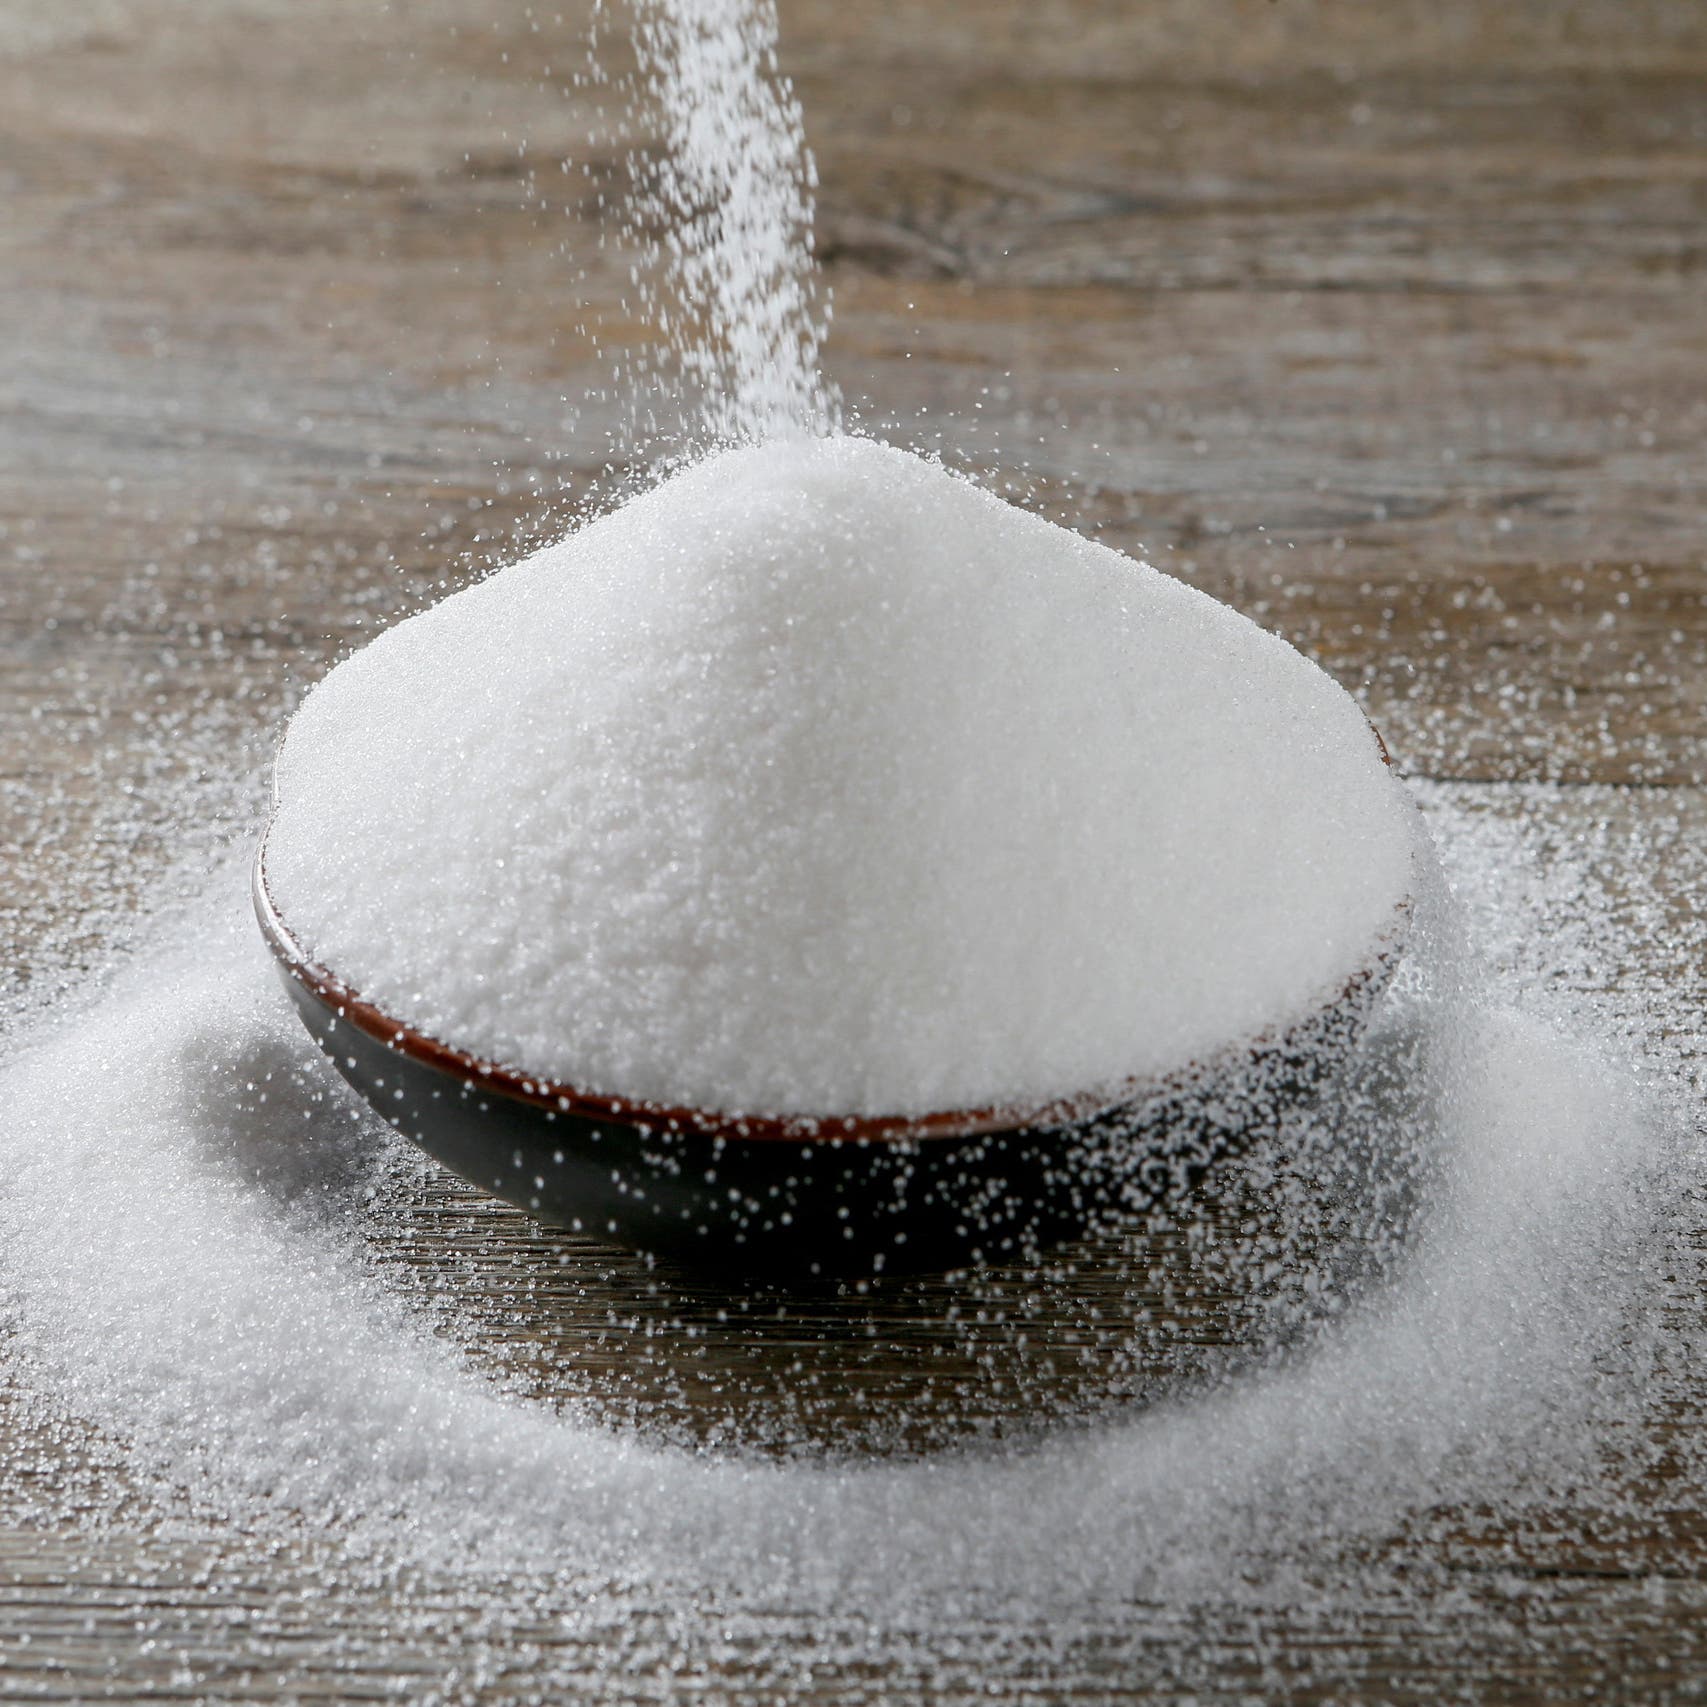 الهند تقرر فرض قيود على تصدير السكر.. هل تشعل أزمة جديدة؟